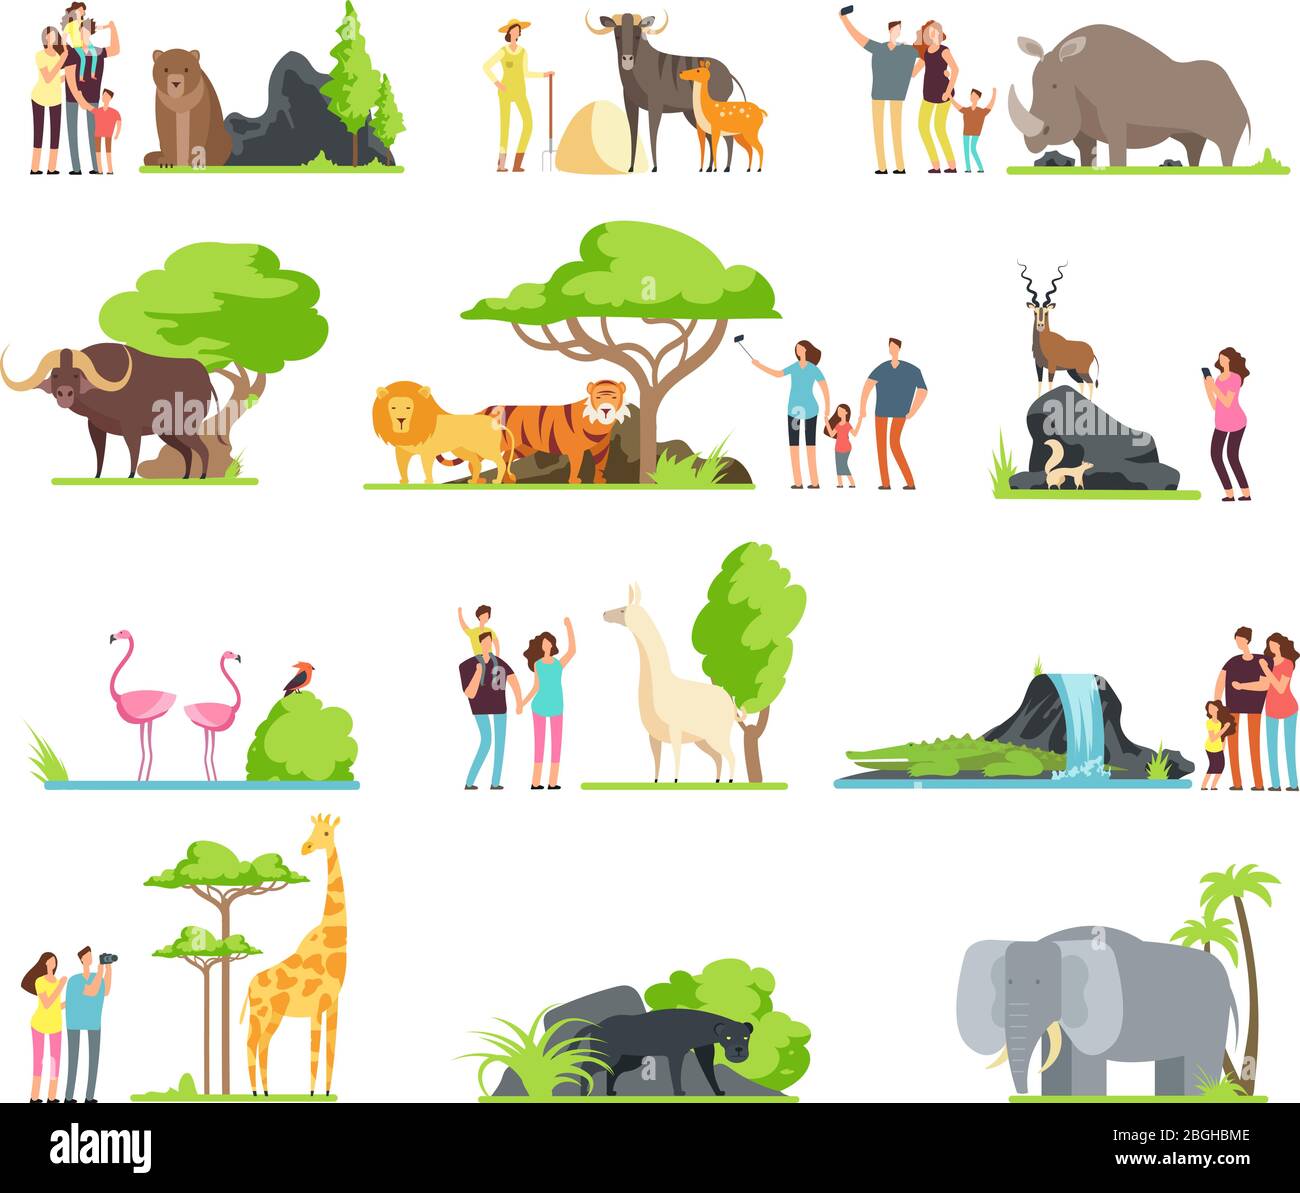 Famiglie felici, bambini con genitori e animali selvatici zoo nel parco faunistico. Cartoni animati vettoriali isolati su sfondo bianco. Illustrazione di giraffa e uccello, orso e pantera Illustrazione Vettoriale